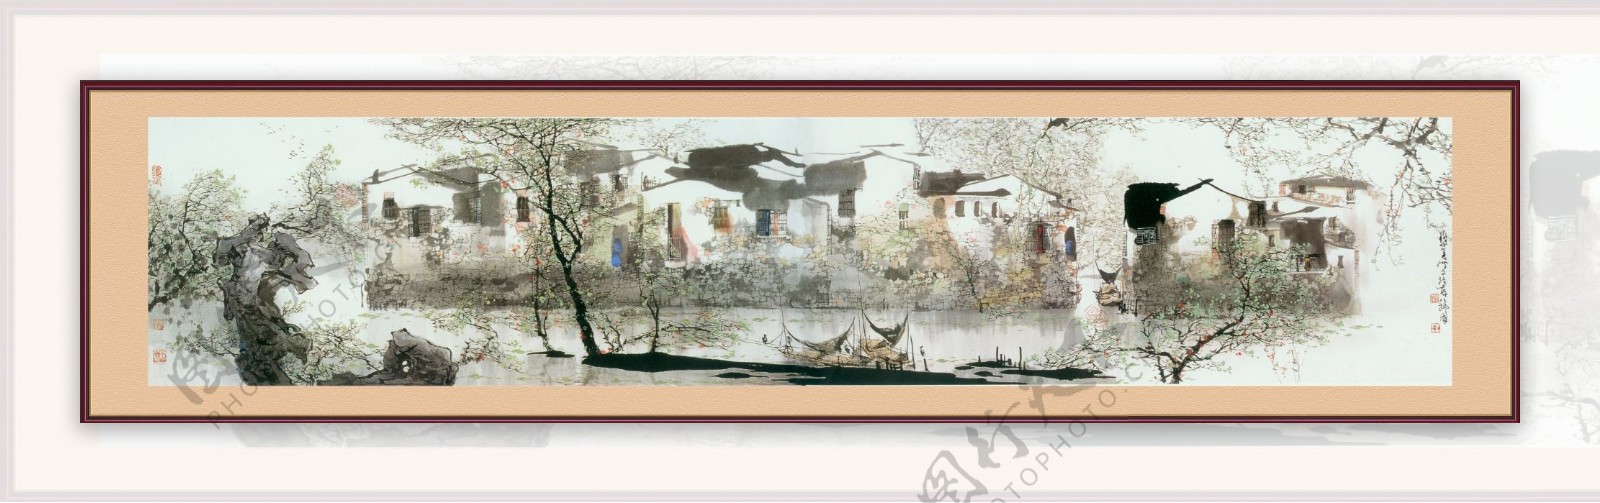 中国传统山水画江南水乡镜框